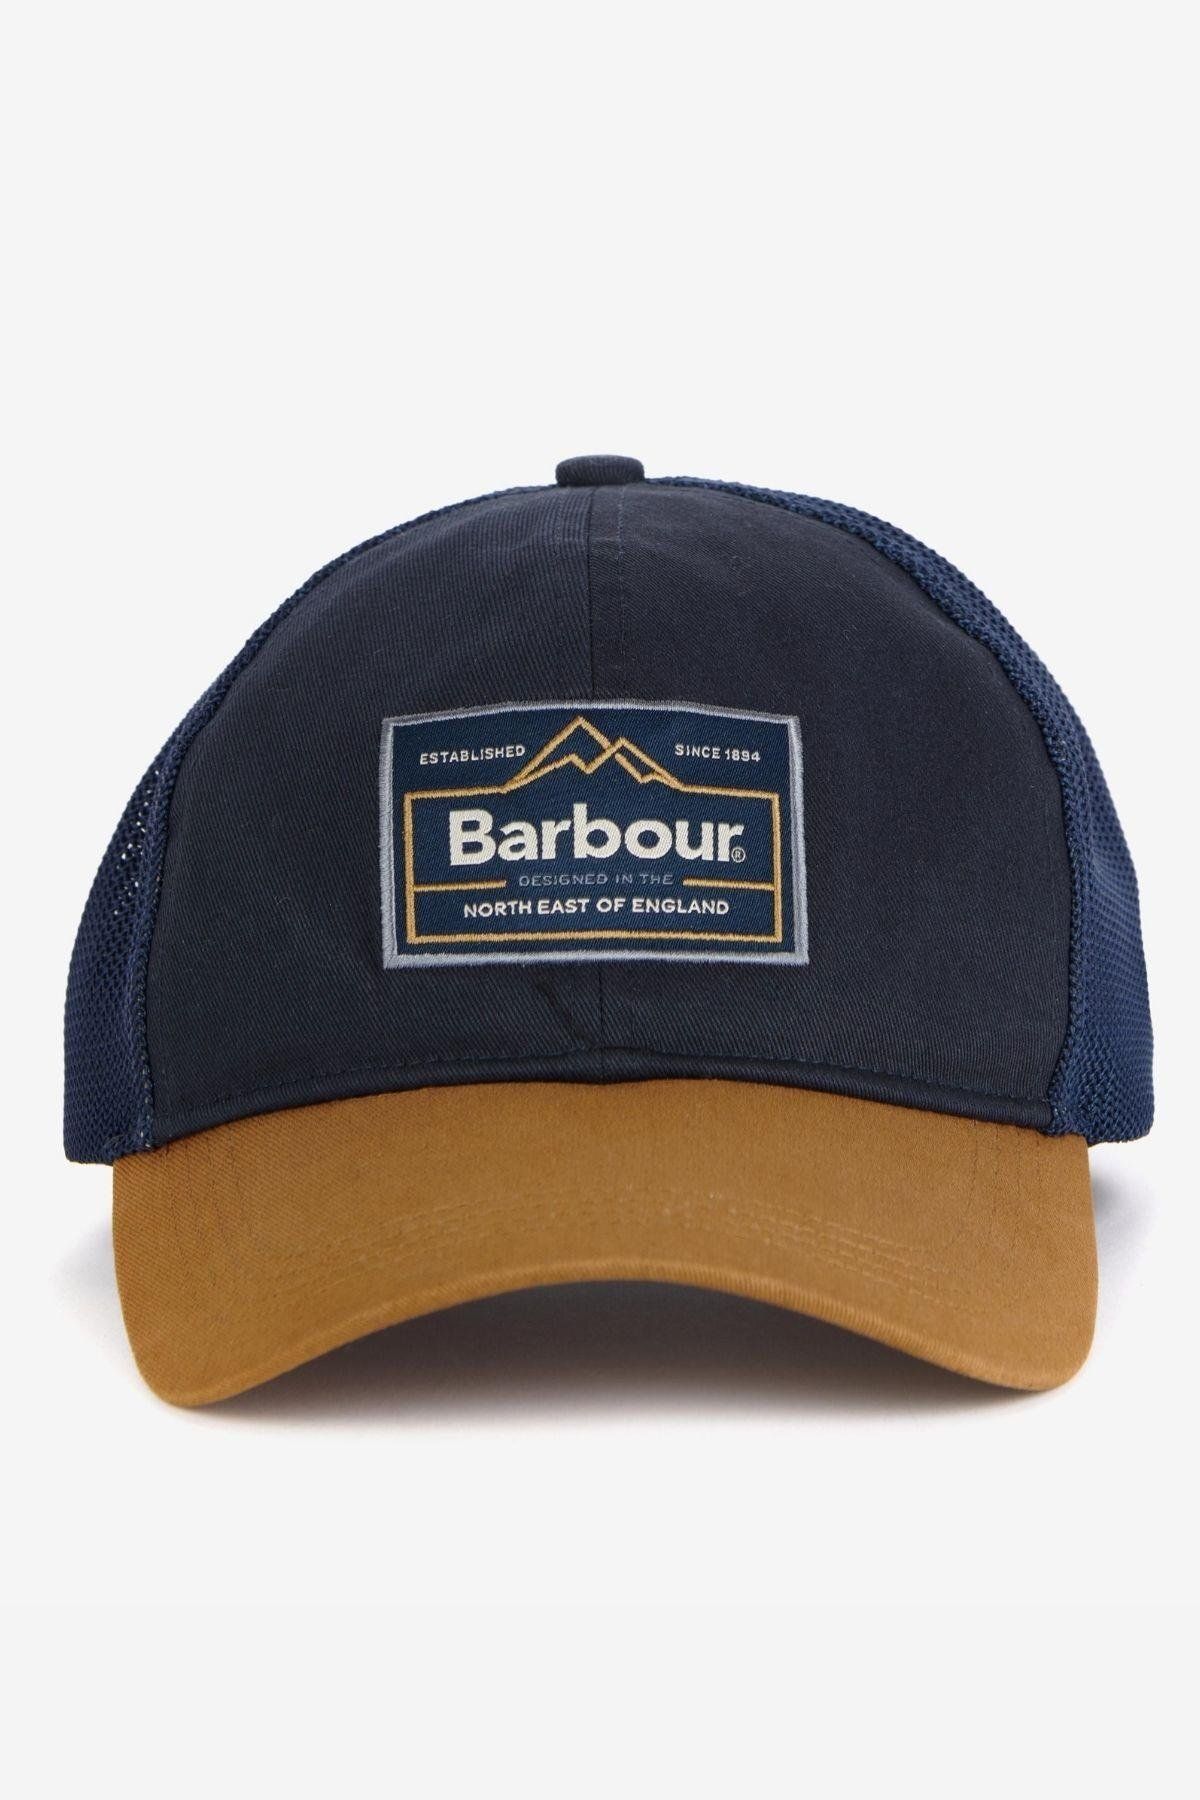 Barbour Bank Truck Şapka Navy/russet